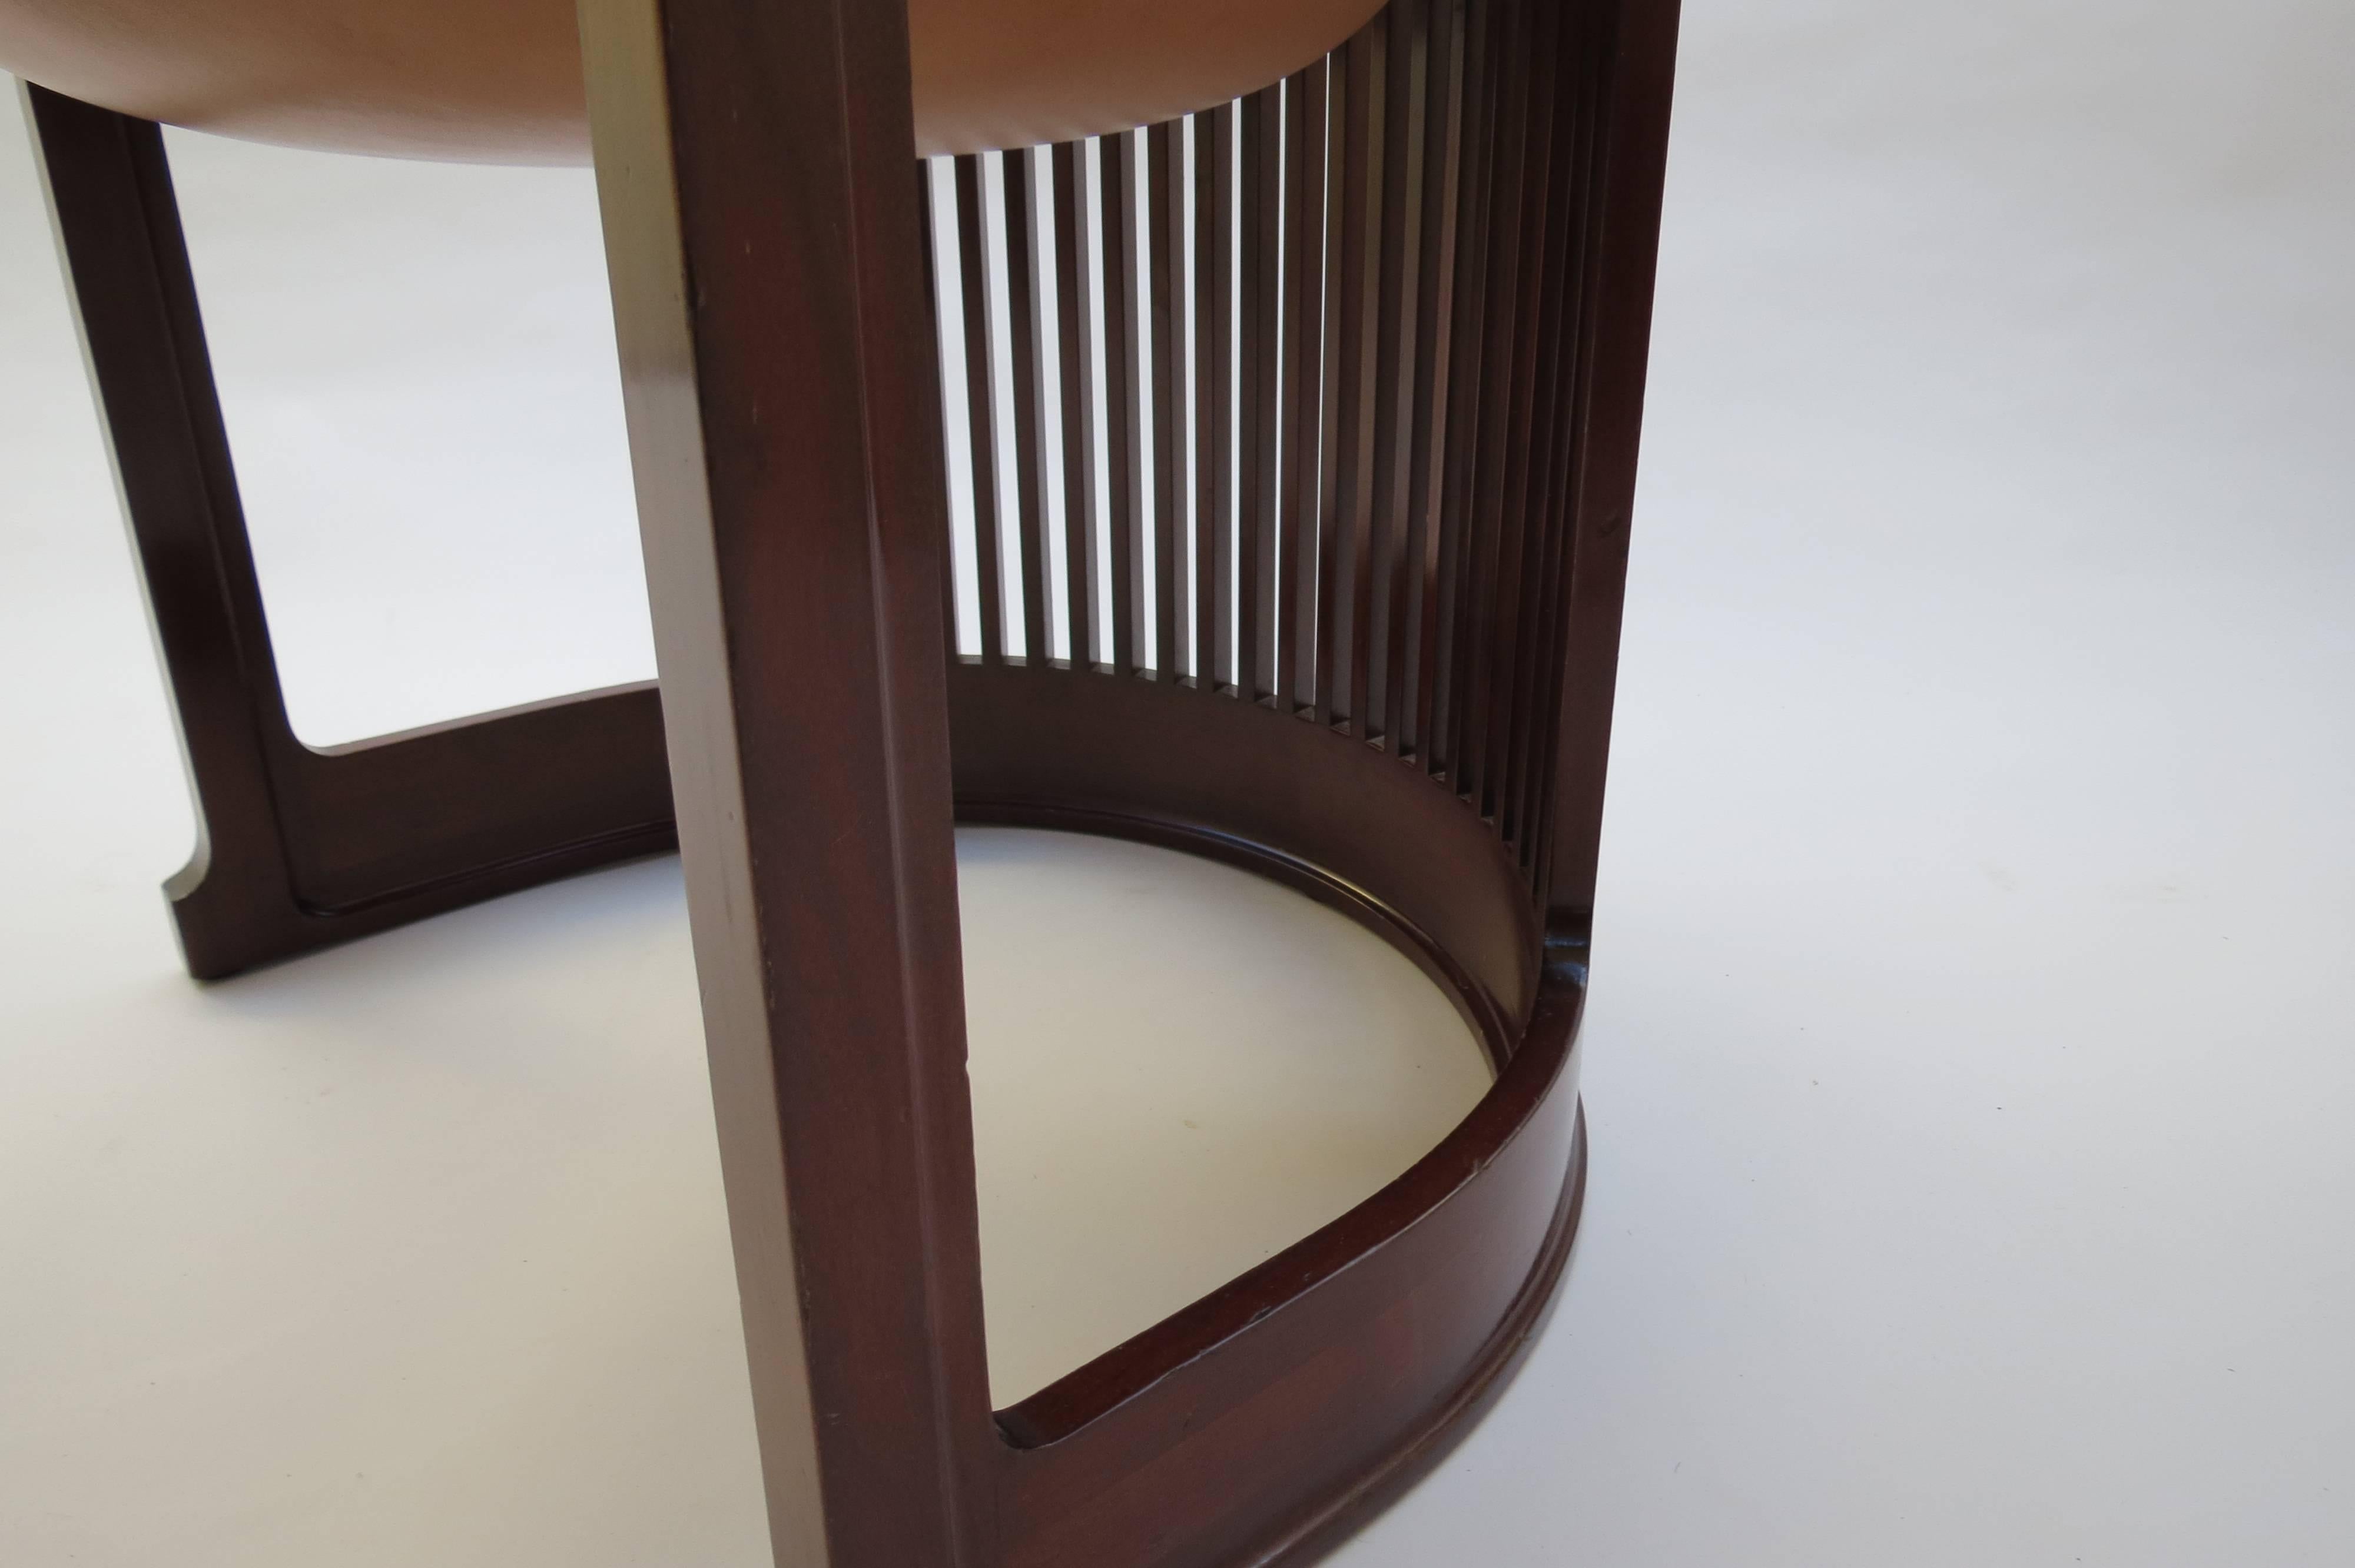 Cherry Barrel Taliesin Chair designed by Frank Lloyd Wright